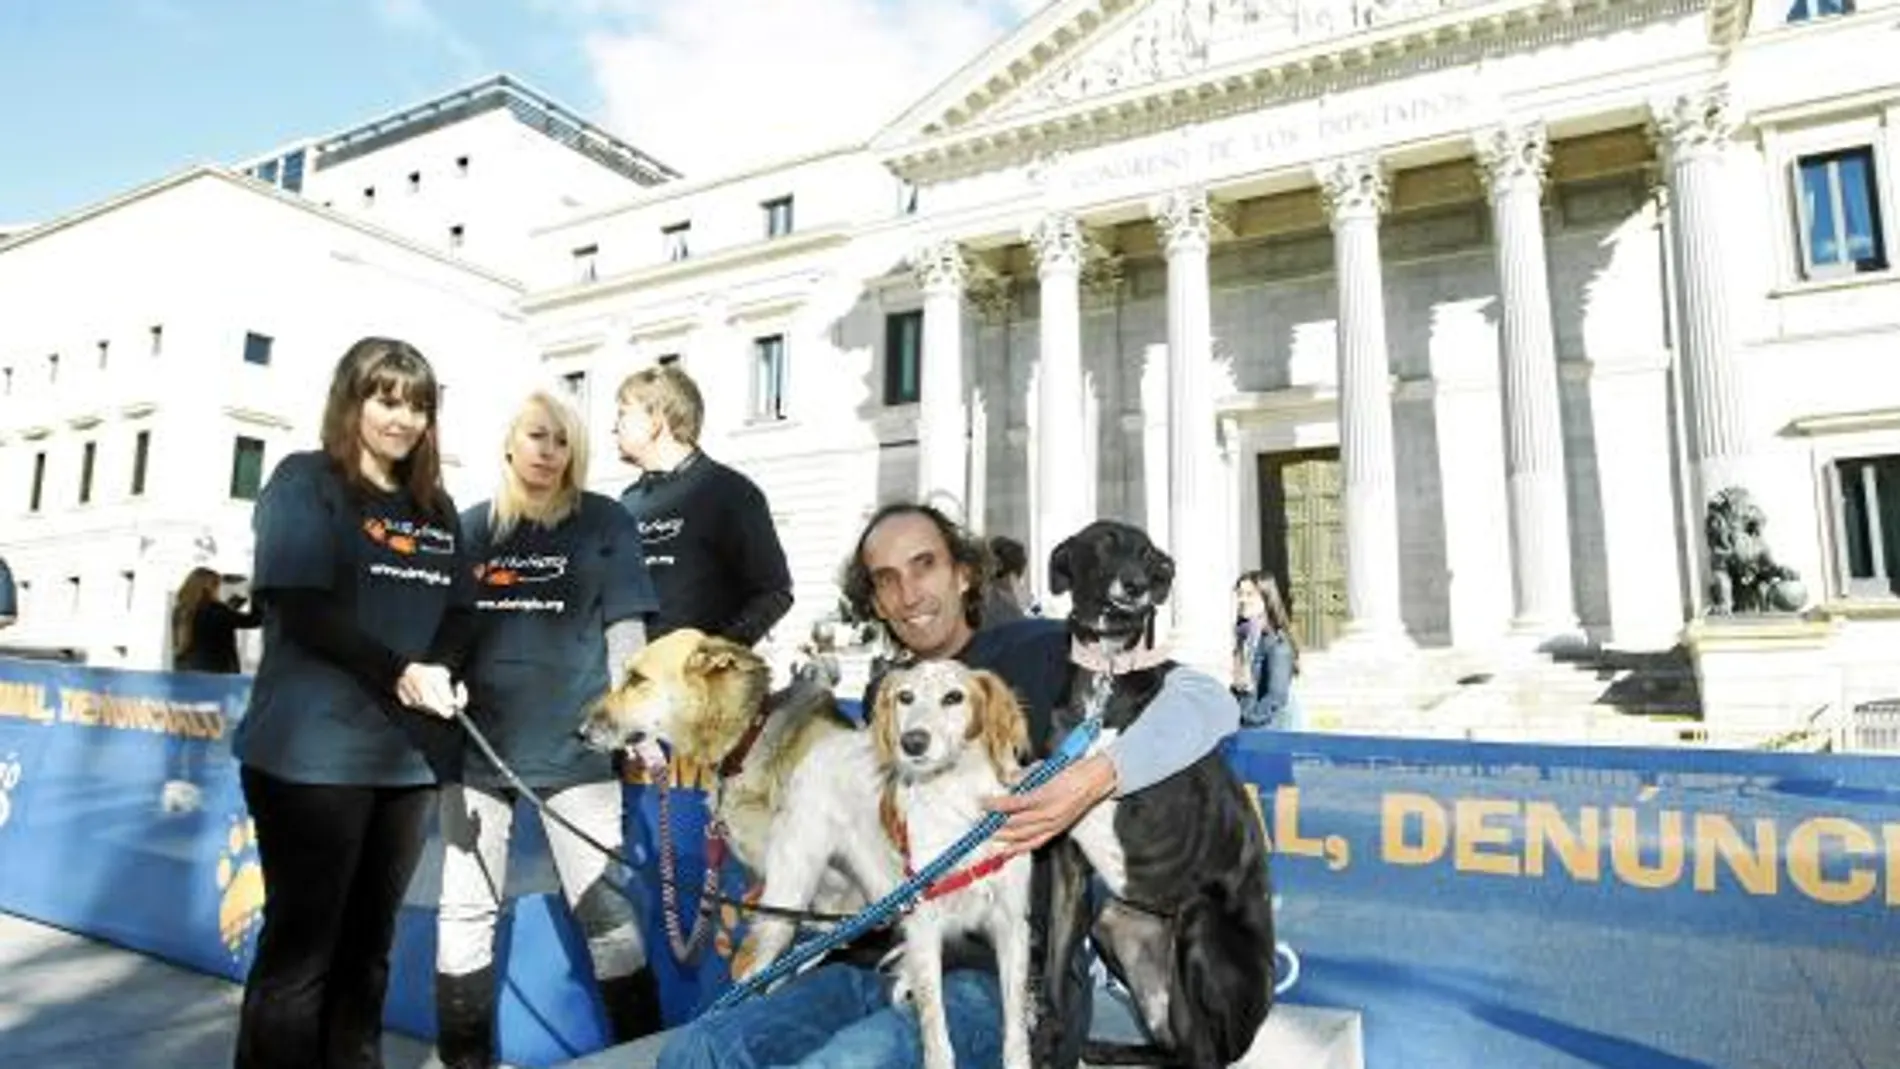 Voluntarios y perros maltratados desplegaron una pancarta en el Congreso animando a denunciar